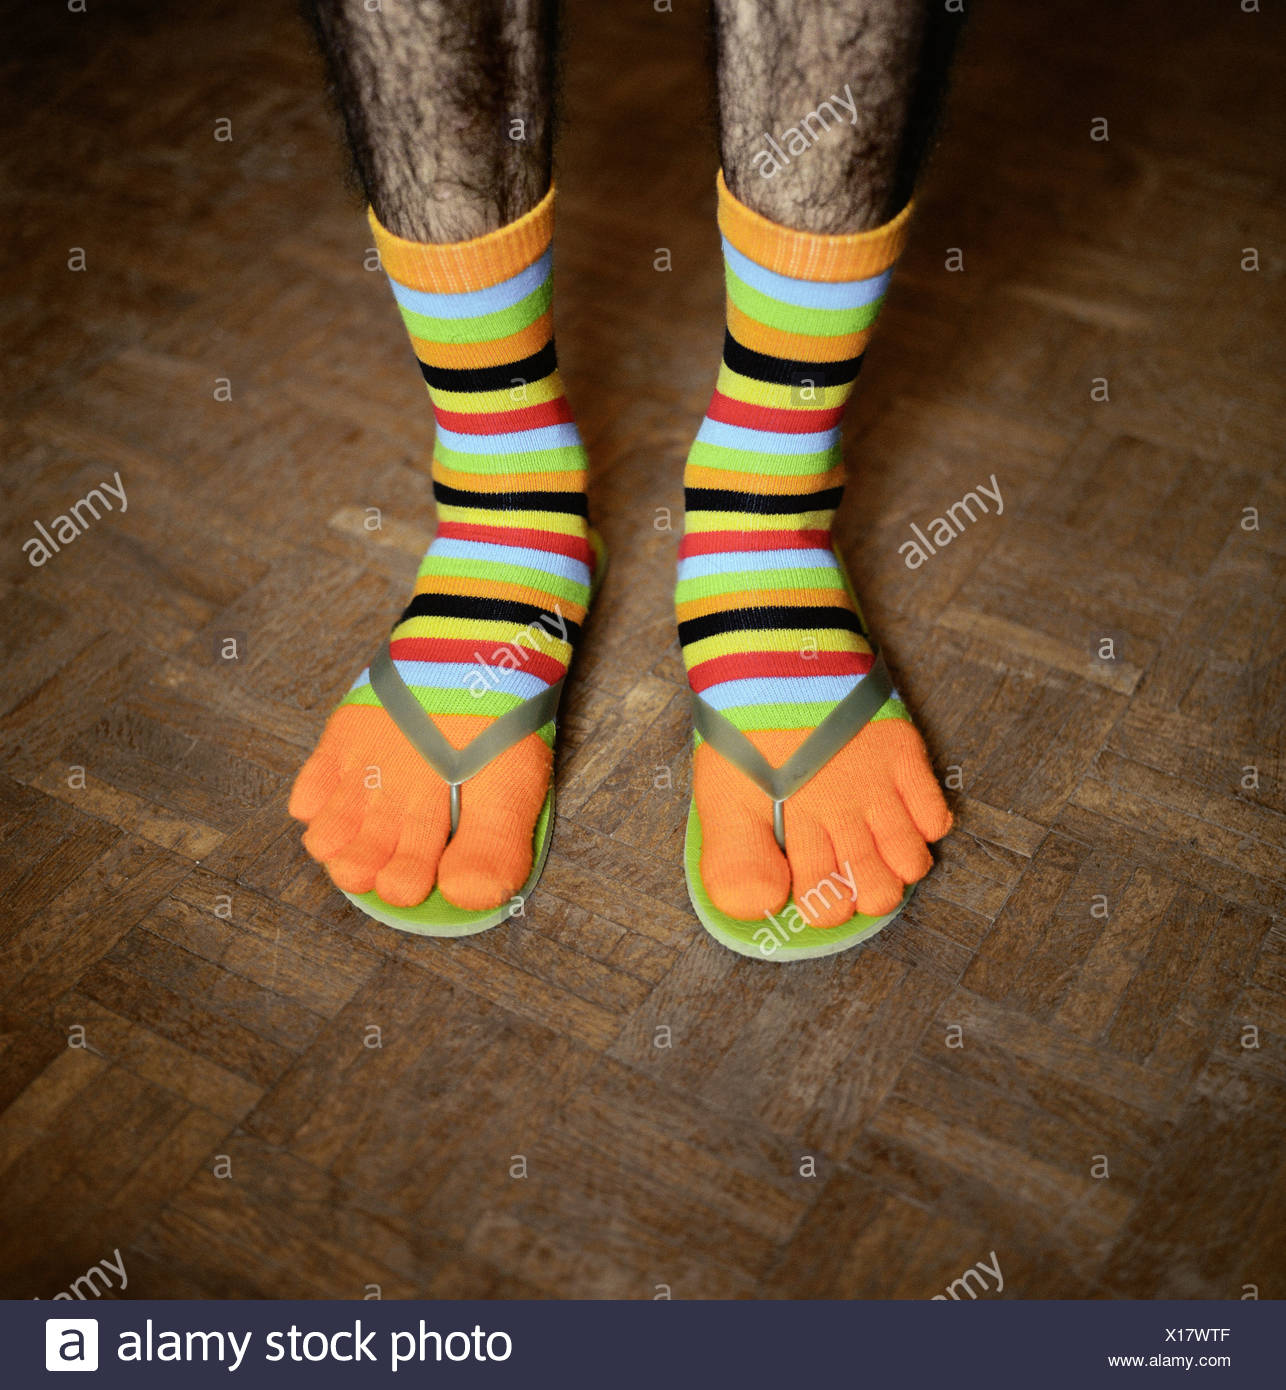 man wearing funny socks 